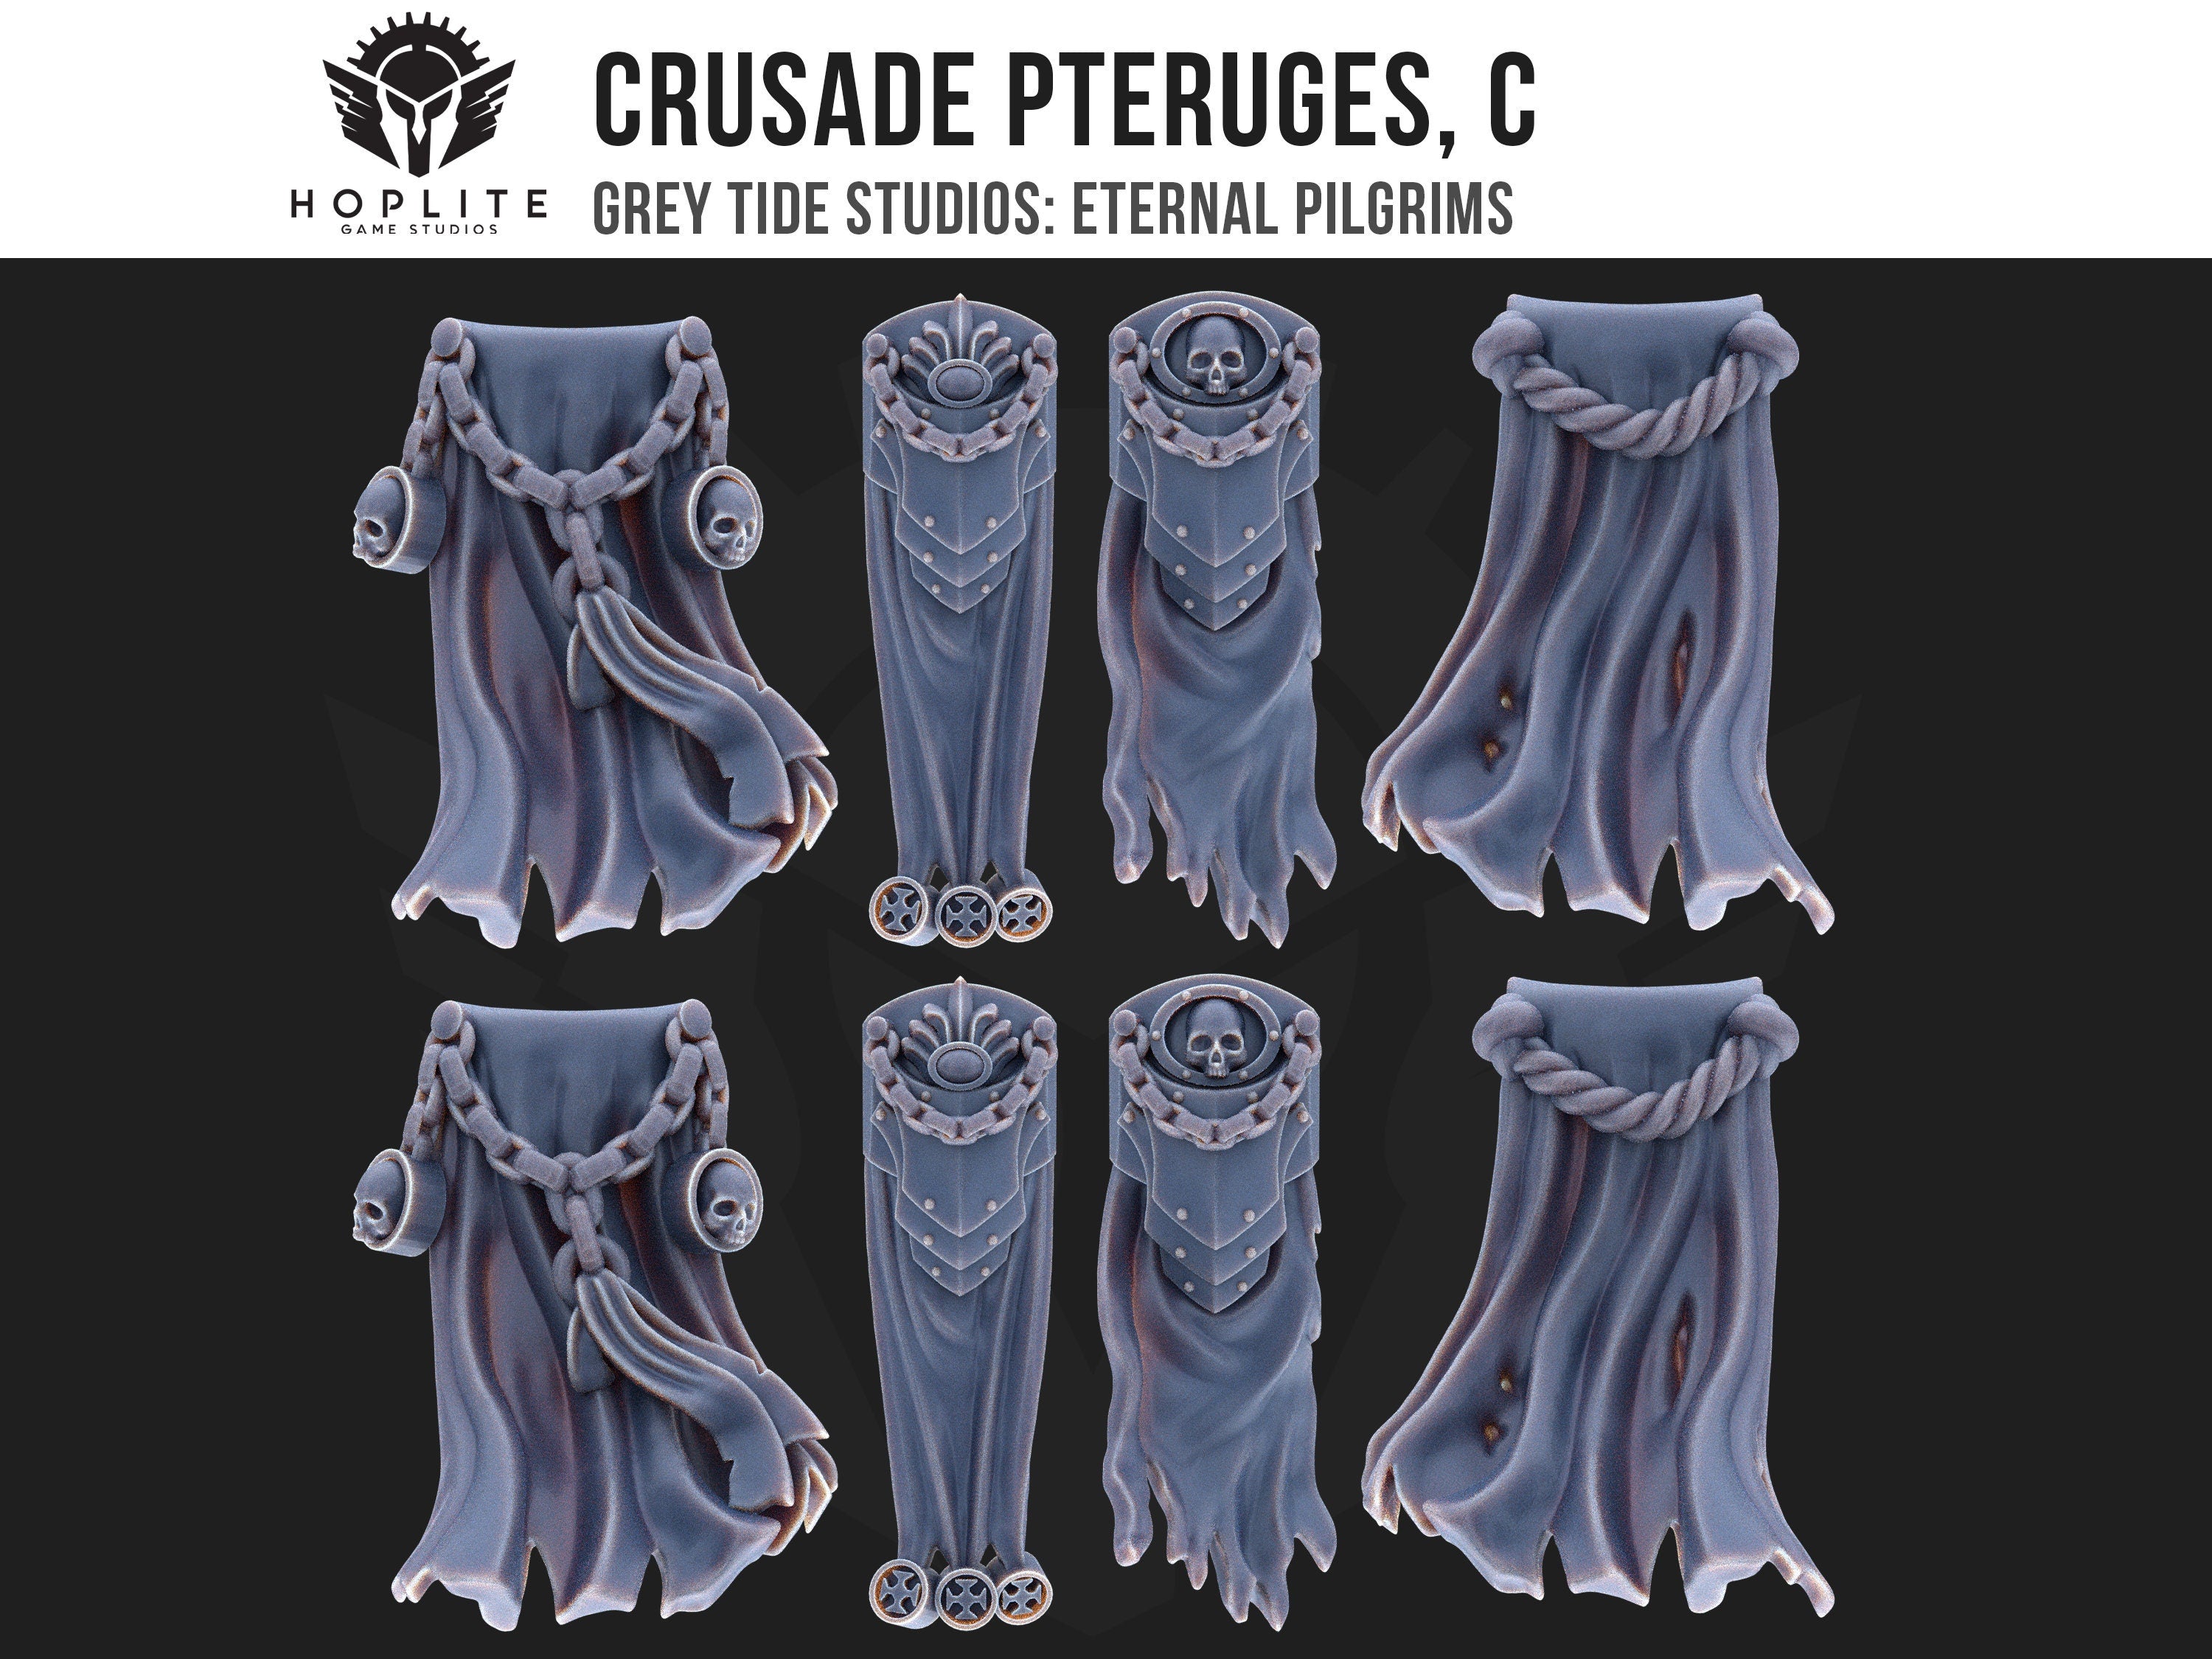 Cruzada Pteruges, C (x10) | Estudios de marea gris | Peregrinos eternos | Piezas y brocas de conversión